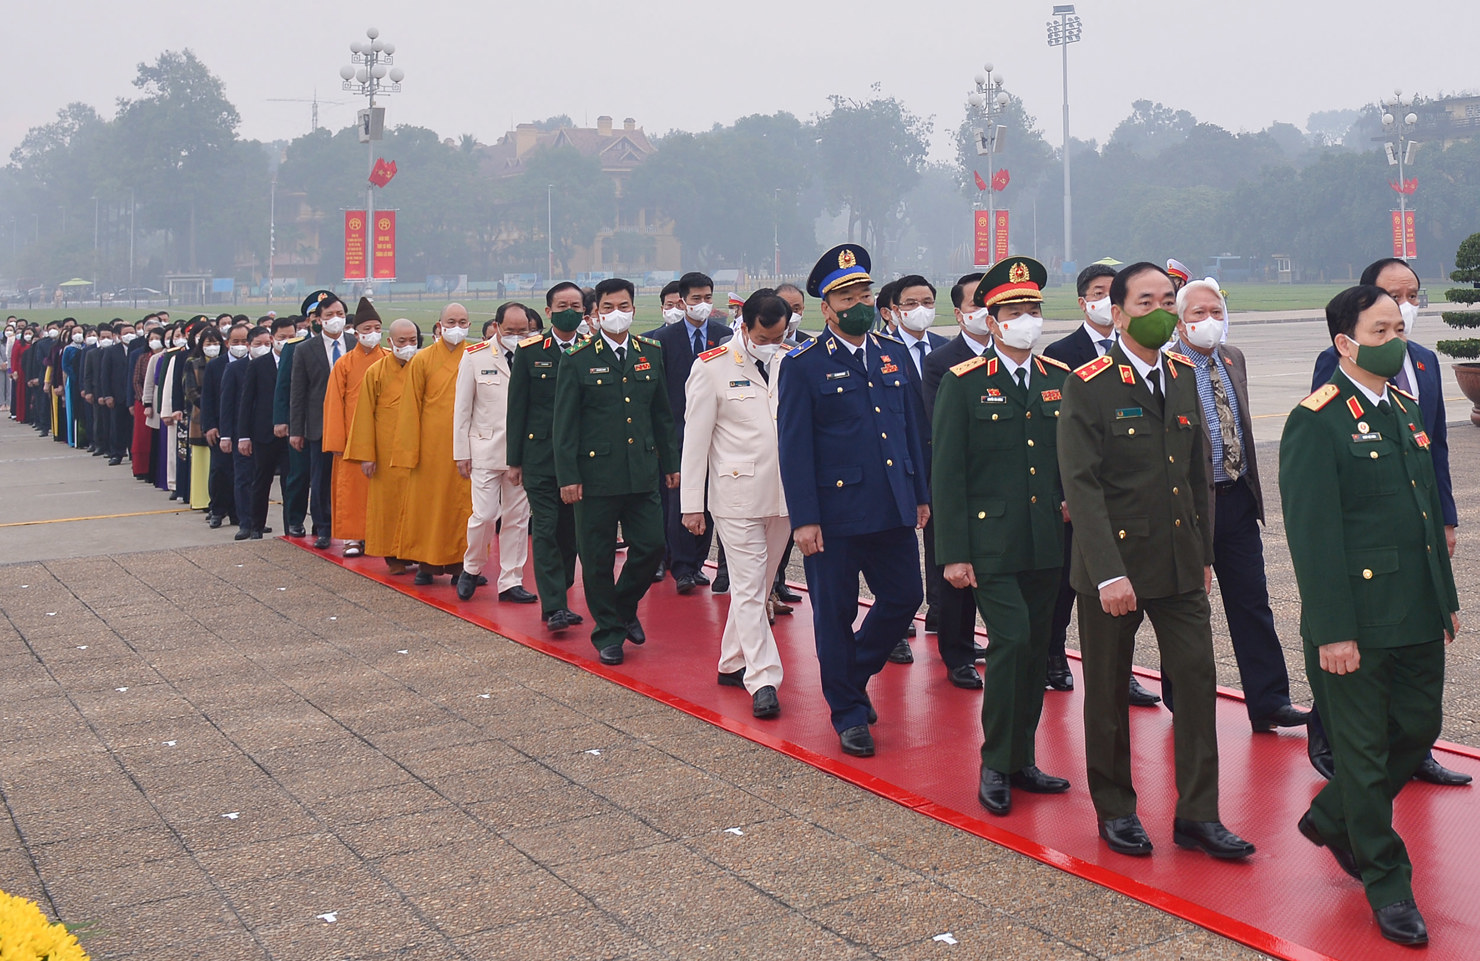 Lãnh đạo Đảng, Nhà nước và các đại biểu Quốc hội vào lăng viếng Chủ tịch Hồ Chí Minh trước khai mạc Kỳ họp bất thường thứ Nhất Quốc hội khoá XV - Ảnh 3